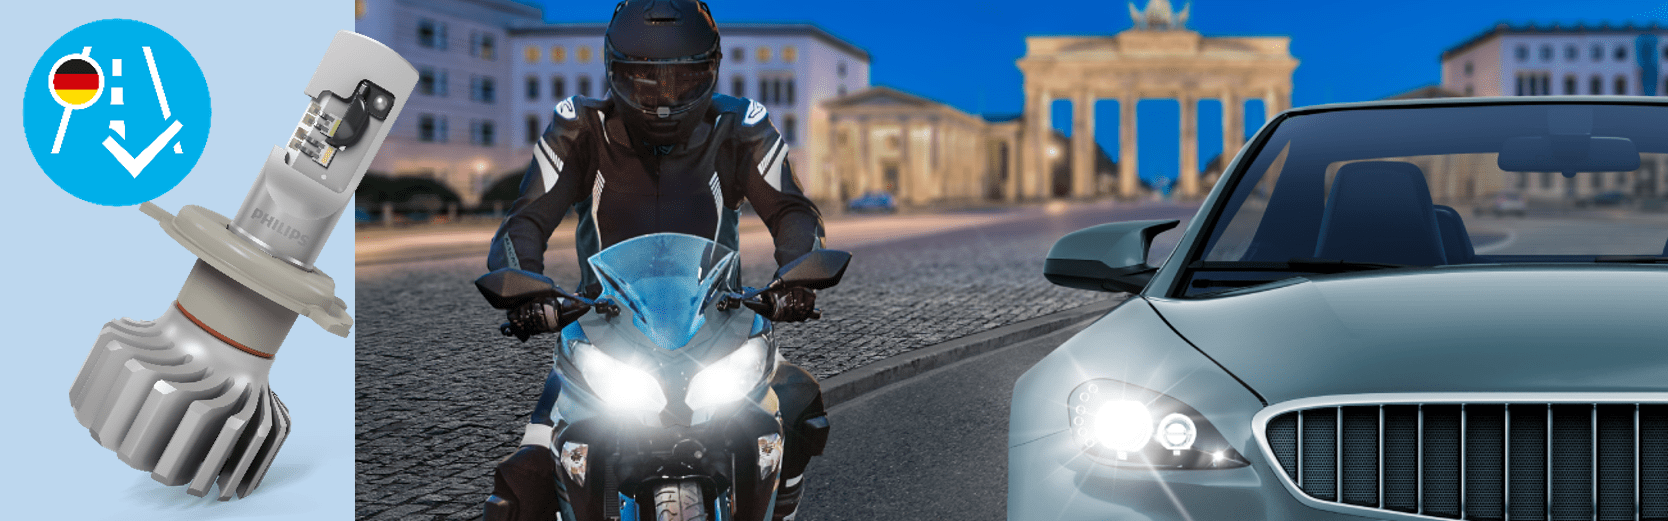 Philips Ultinon Pro6000 LED - Jetzt erstmals auch für Motorräder  erhältlich!